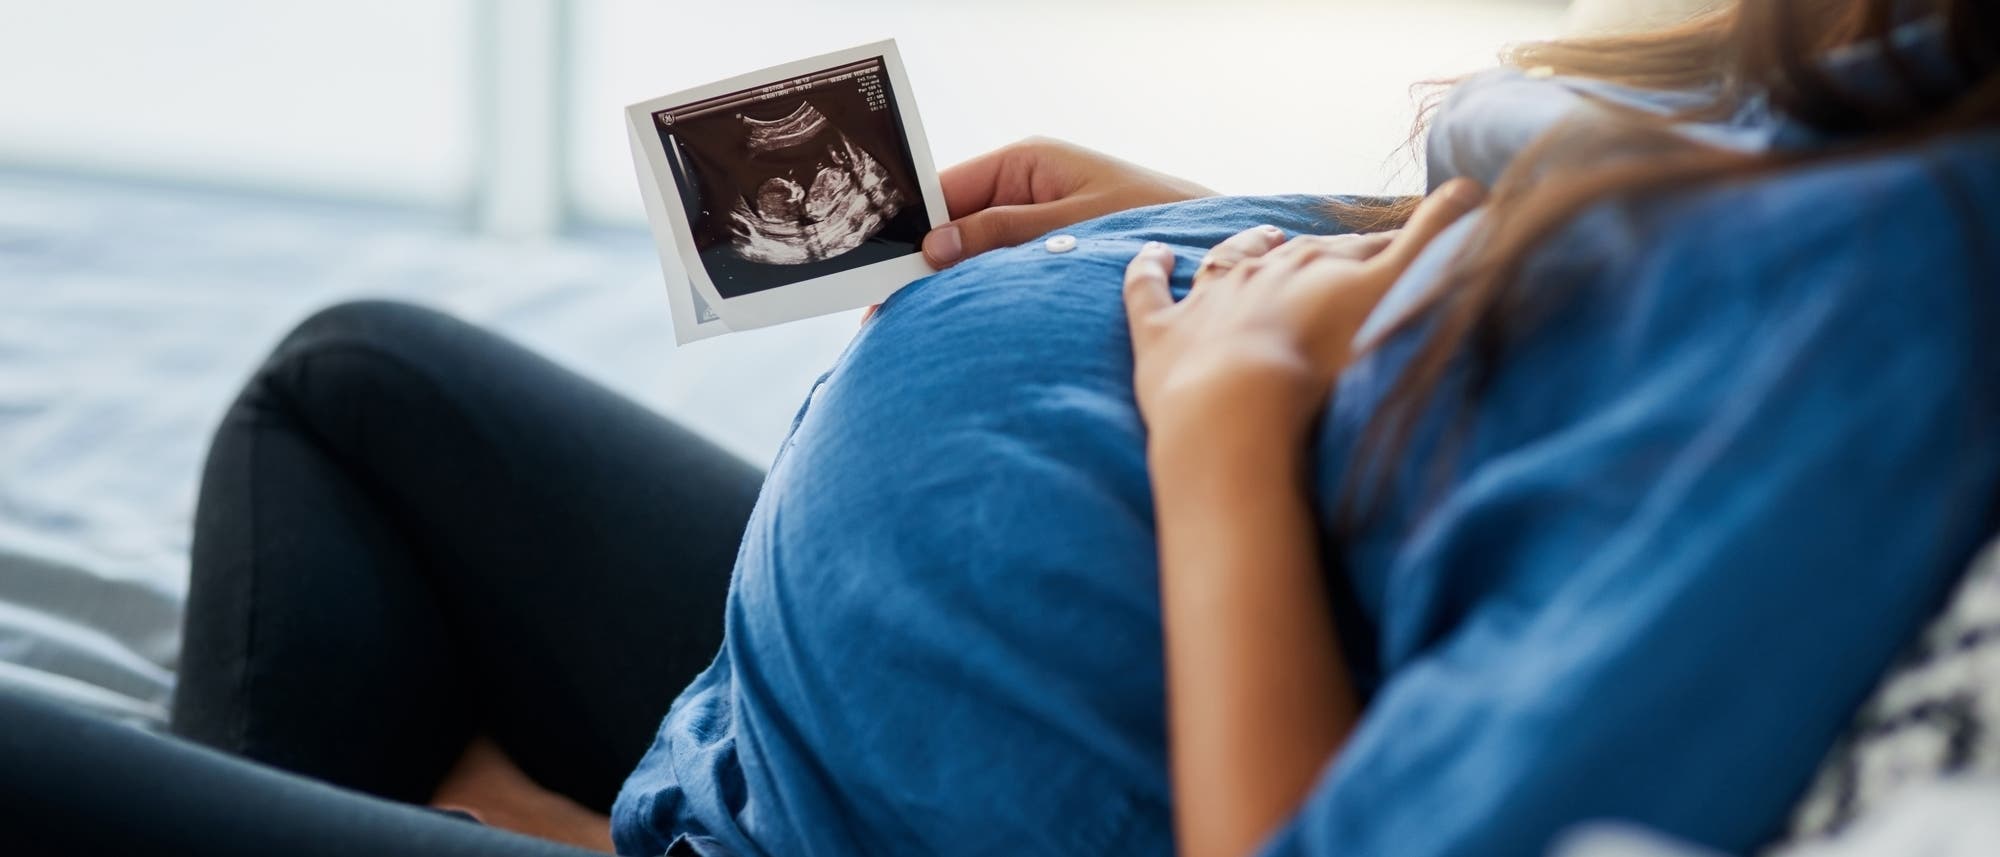 Eine Schwangere hält ein Ultraschallbild eines Ungeborenen in der Hand.